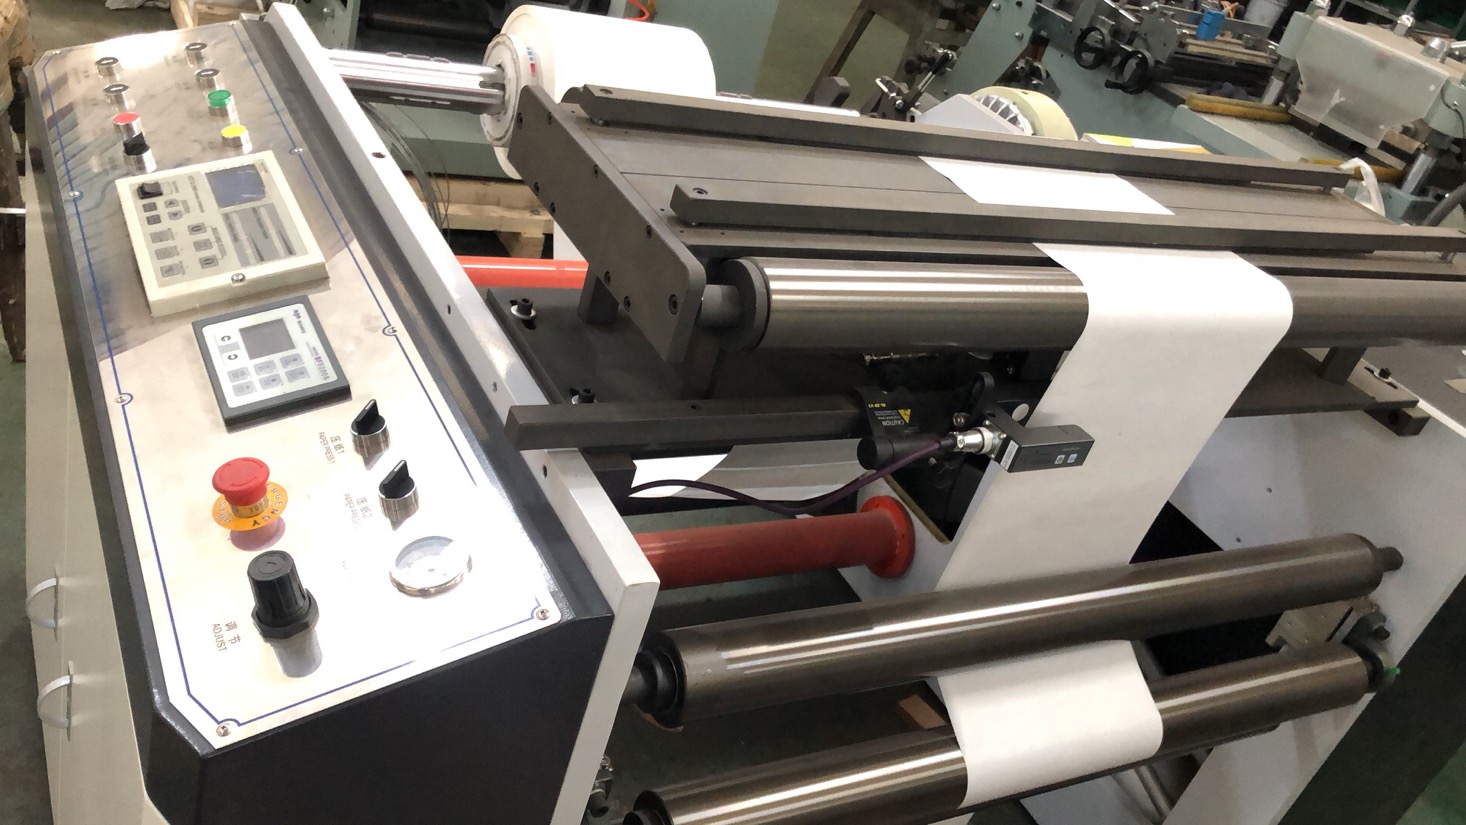 Máquina impresora de bolsas de papel Máquina impresora flexográfica HJ-950